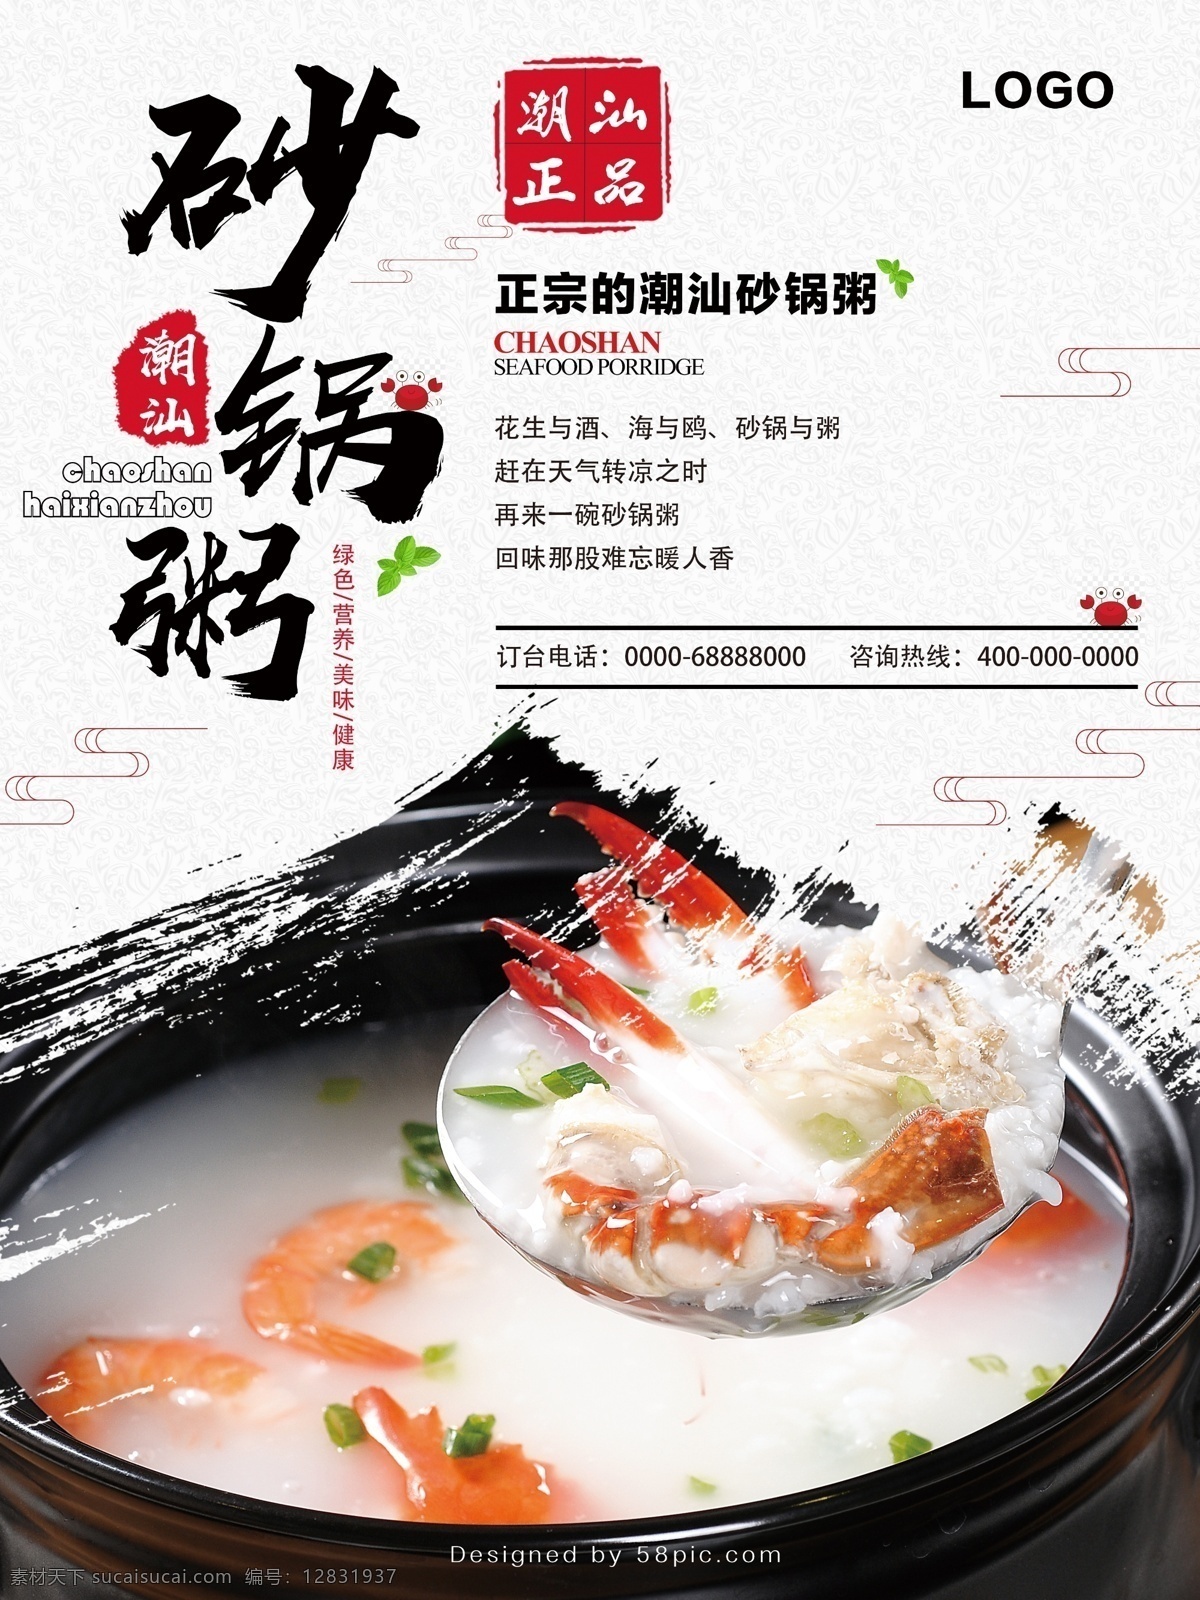 美食 砂锅 粥 系列 简洁 大气 潮汕砂锅粥 砂锅美食 美食海报